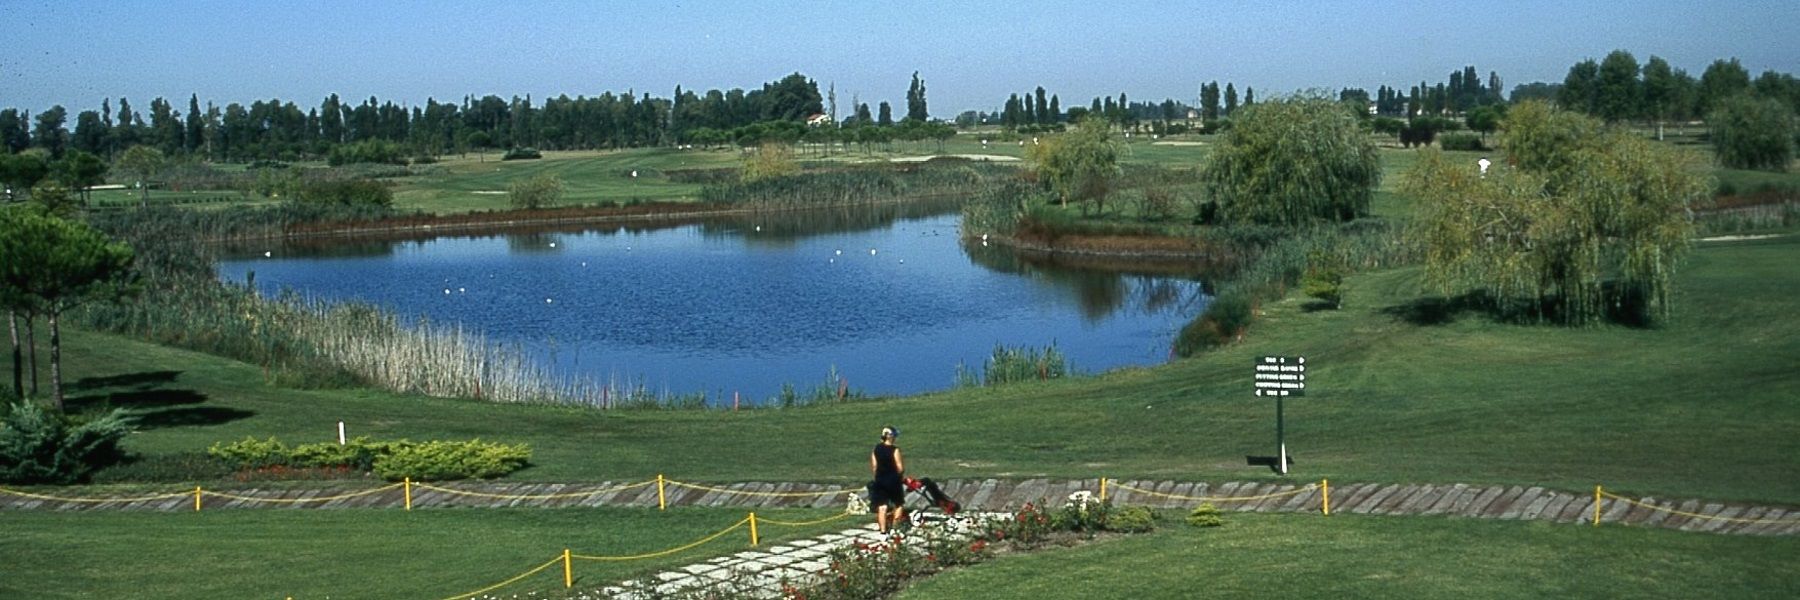 Adriatic Golf Club Cervia - Rendez-vous d'avril